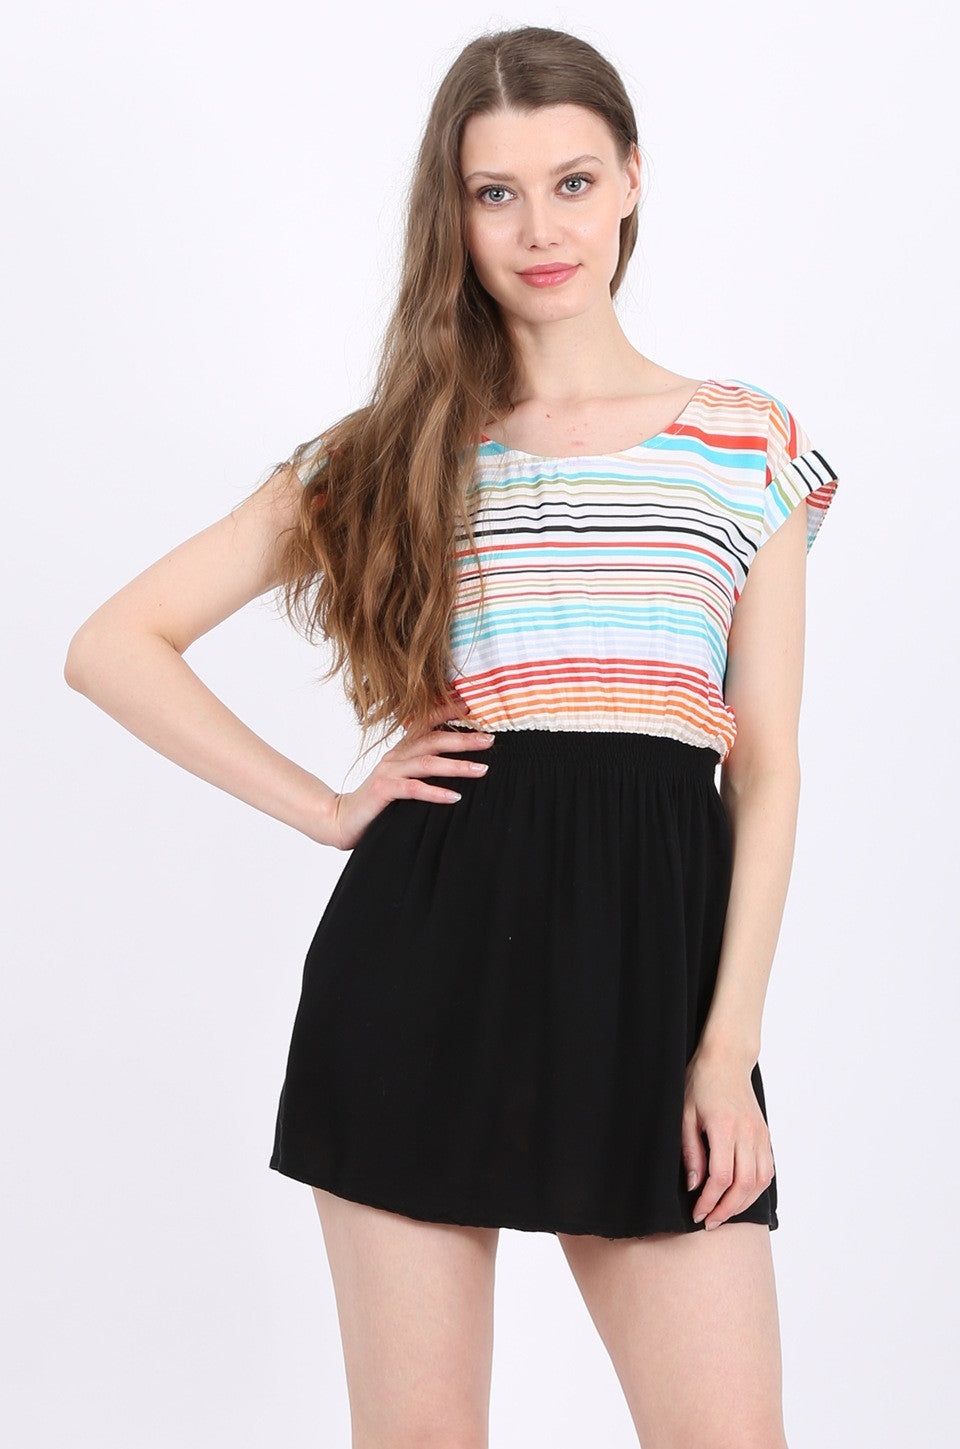 MISS PINKI Remi Dress in multi stripe print